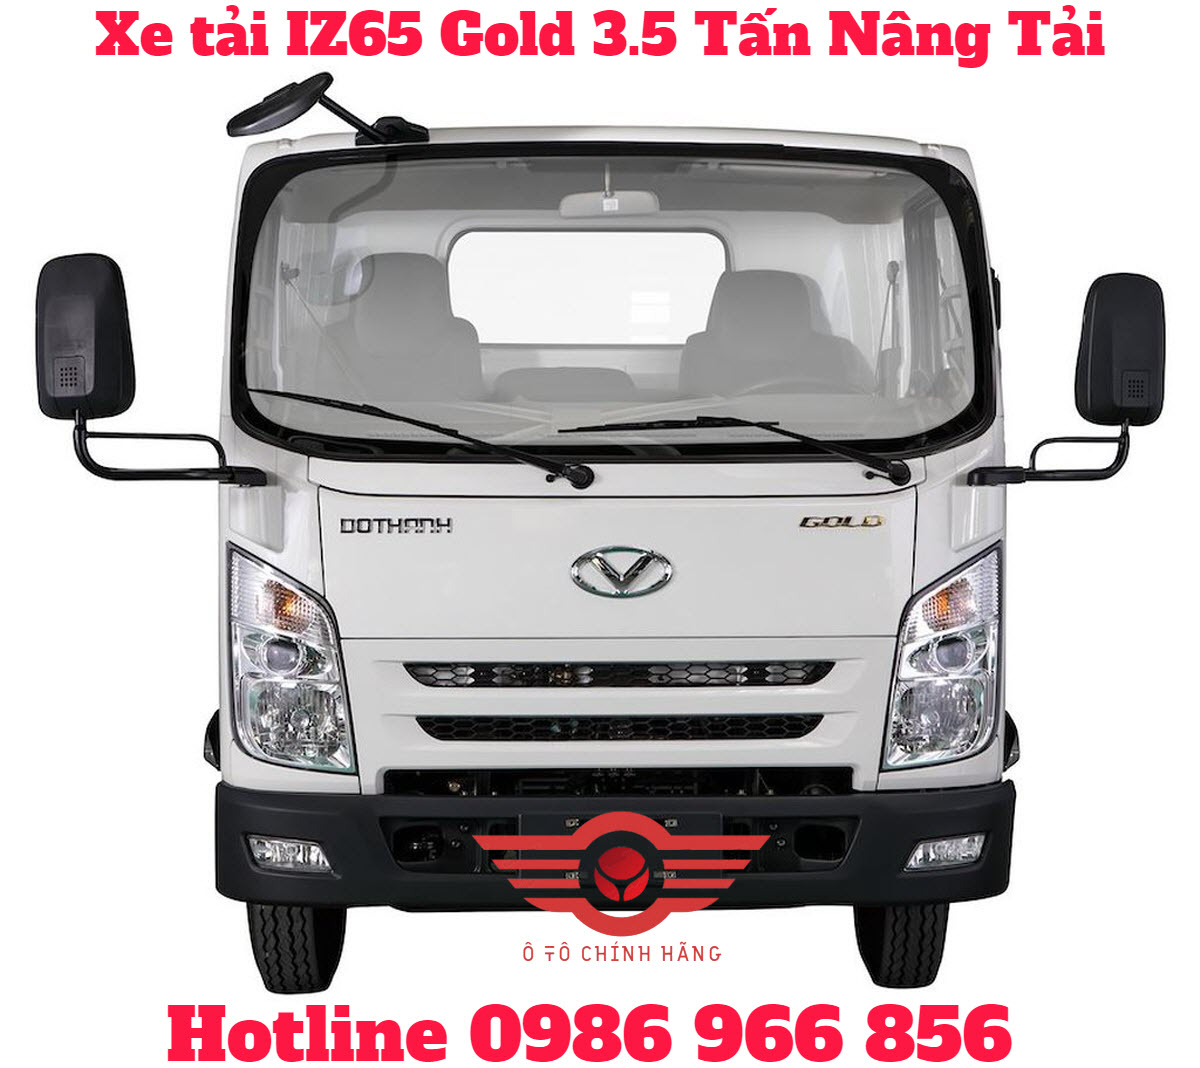 Giá xe tải IZ65 Gold Đô Thành